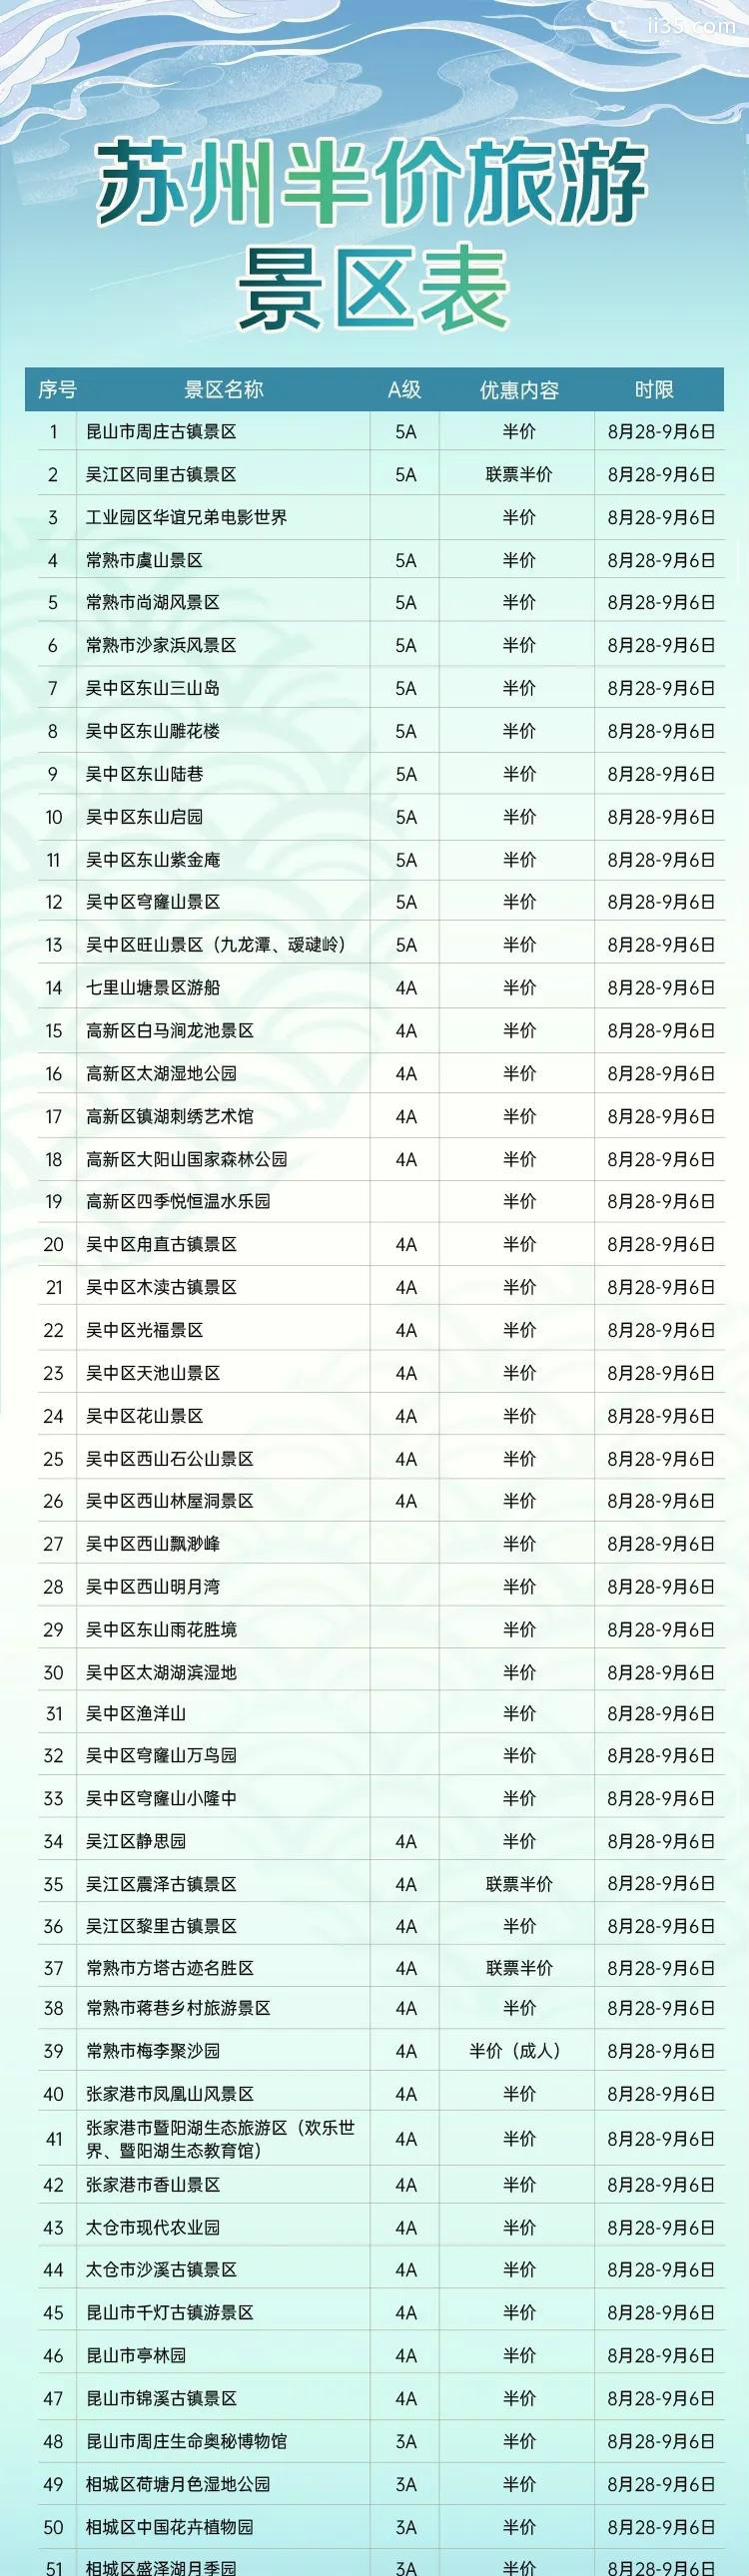 2020江南文化艺术国际旅游节时间及苏州景区门票半价名单